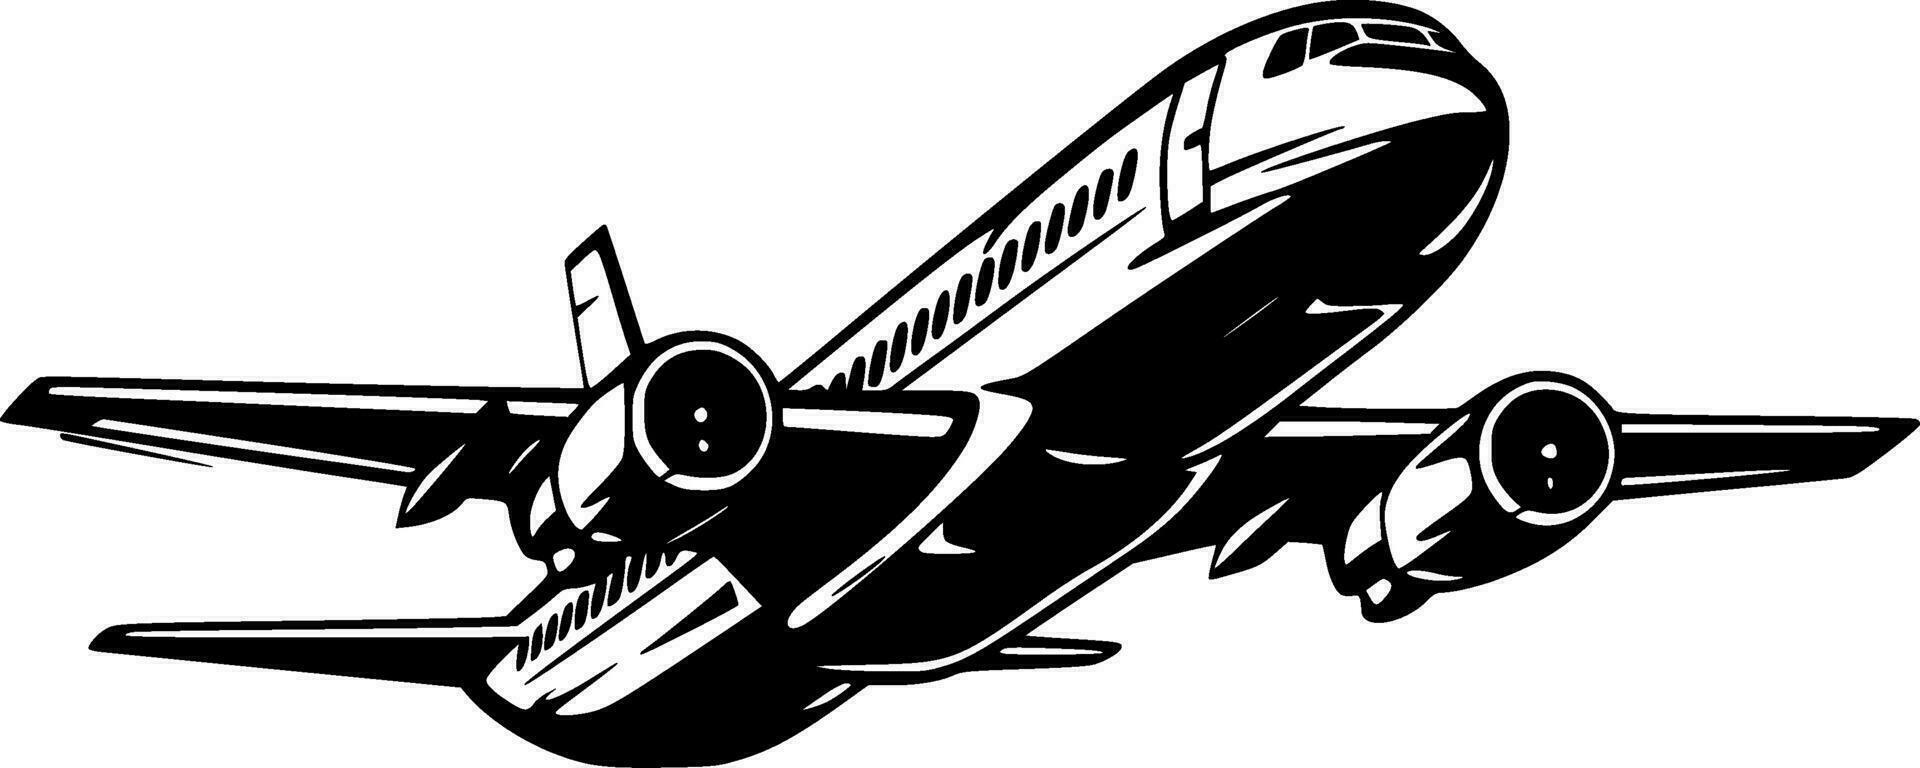 avión, minimalista y sencillo silueta - vector ilustración